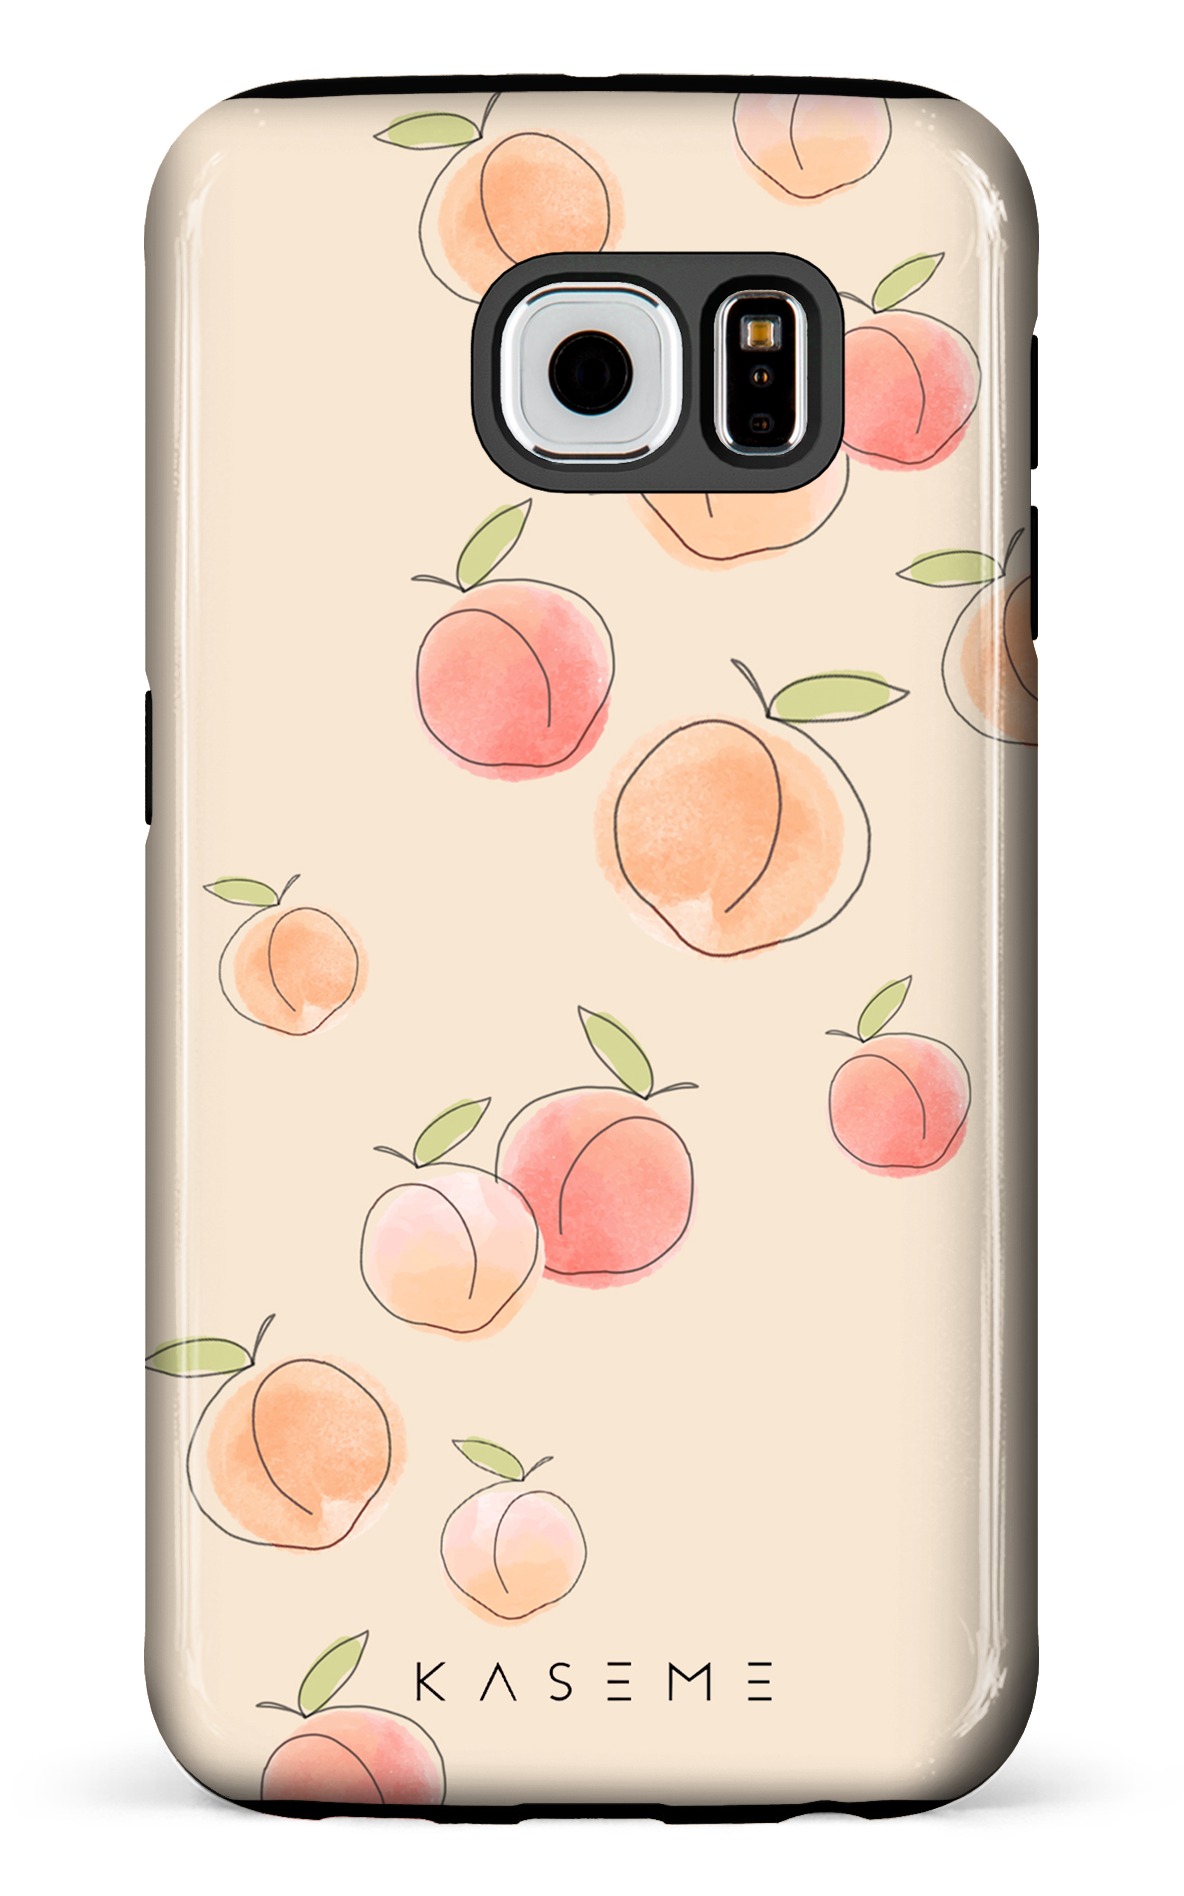 Peachy - Galaxy S6